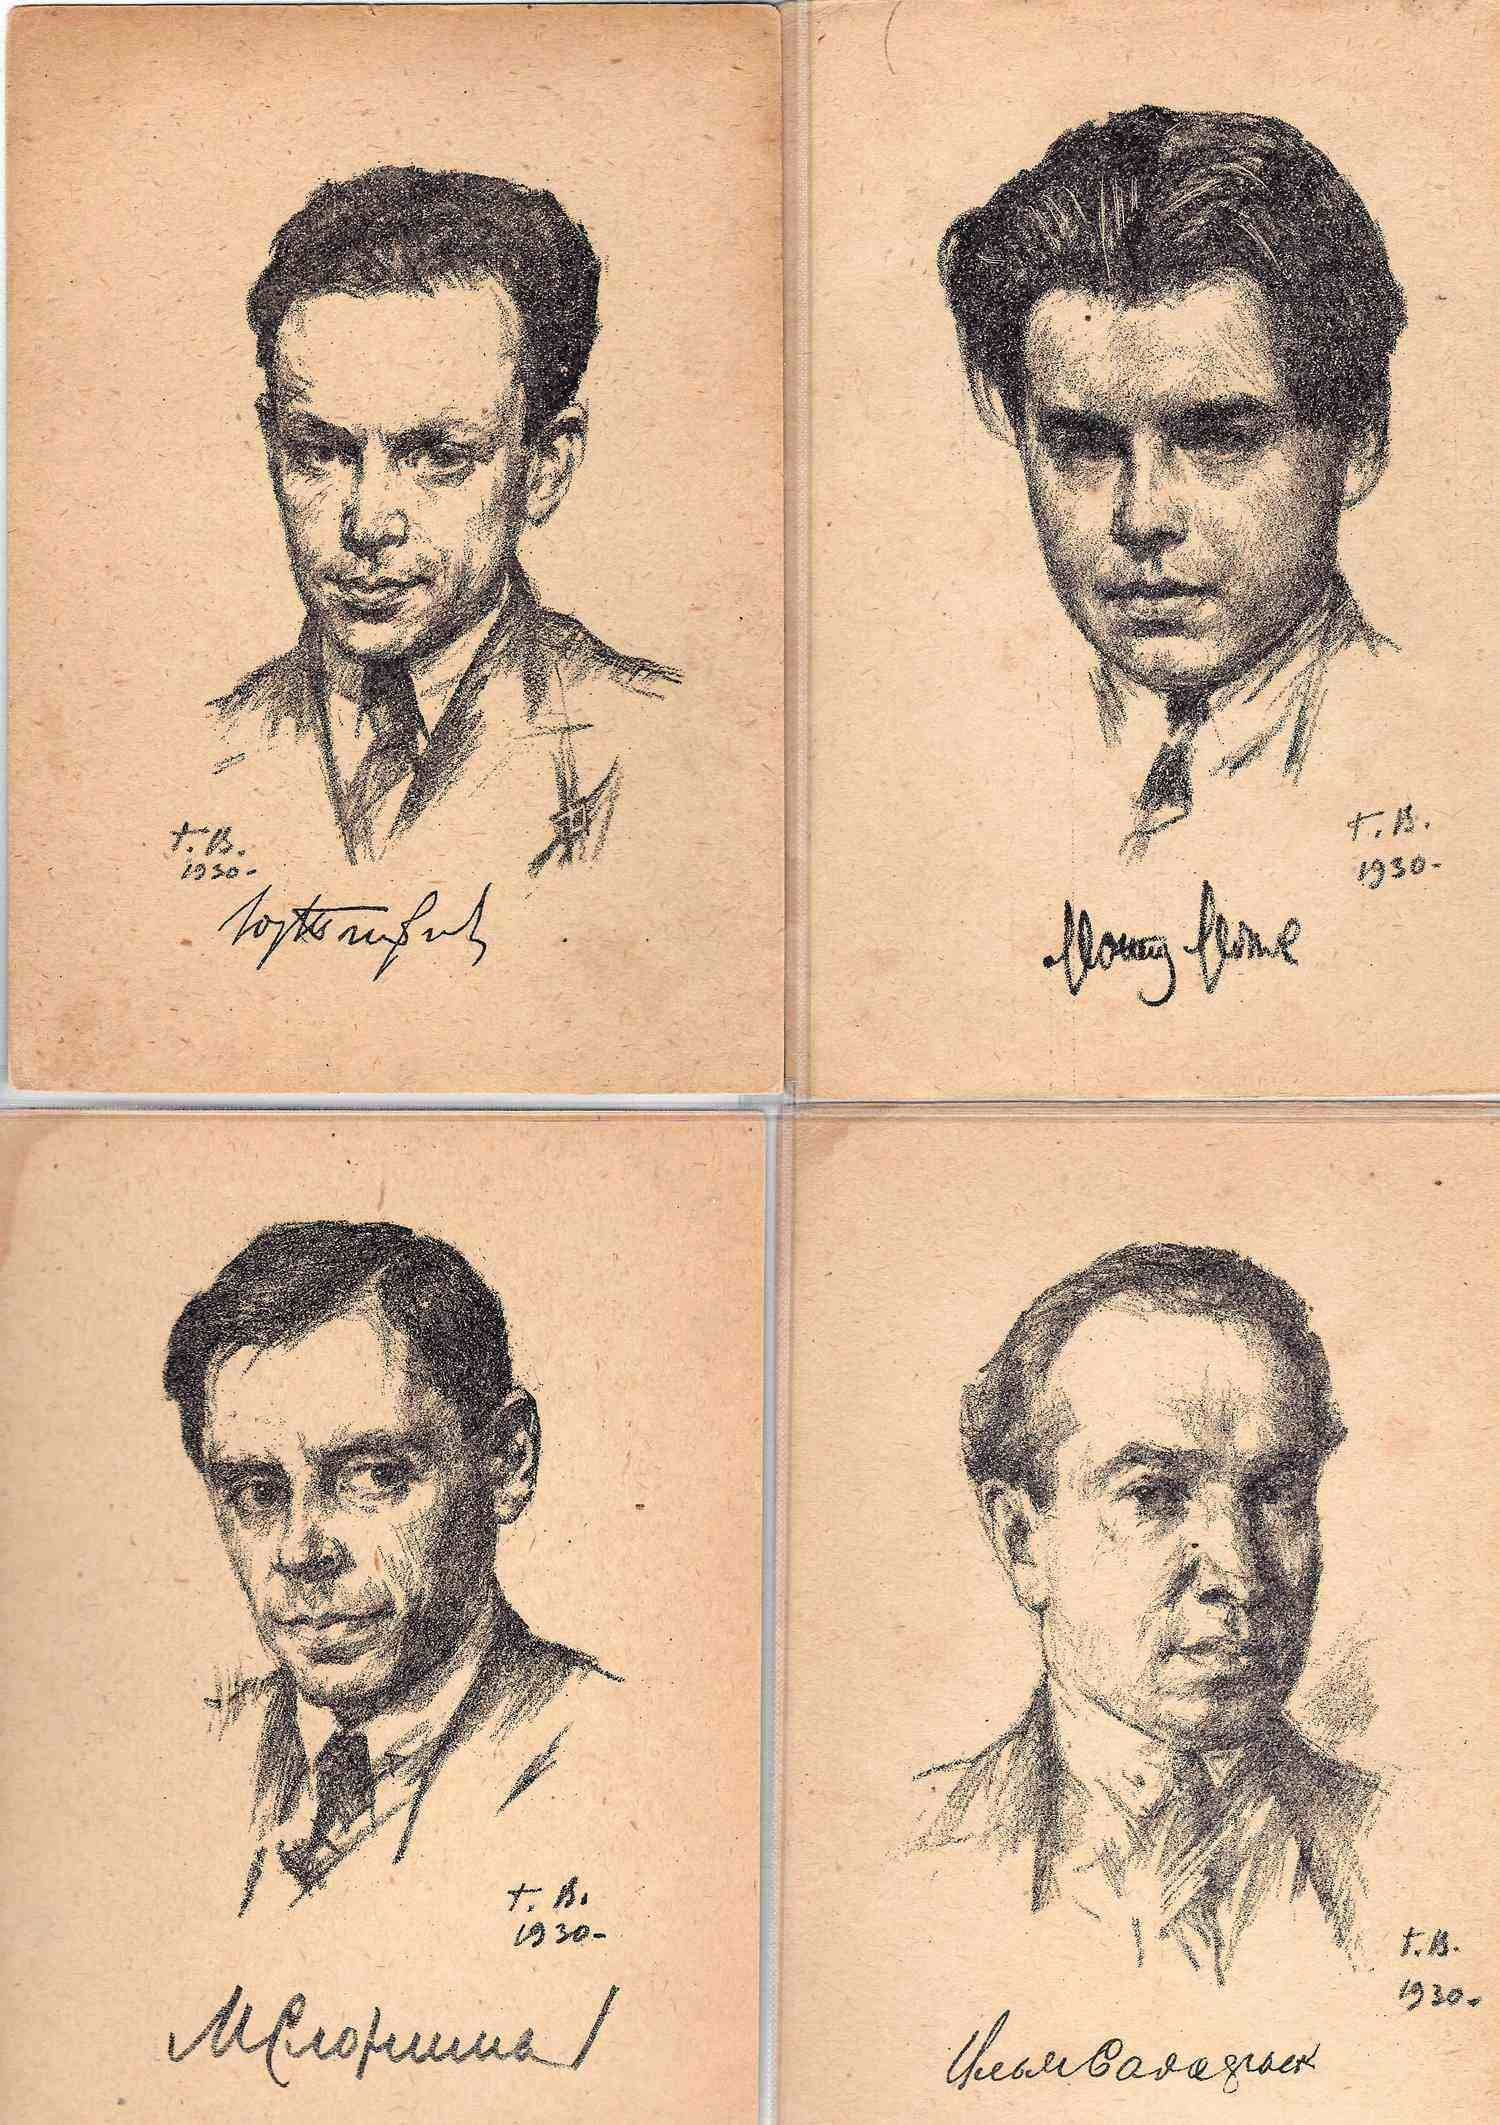 Верейский Г.С. 16 открыток из серии «Советские писатели. Автолитографии» (Л., 1930).